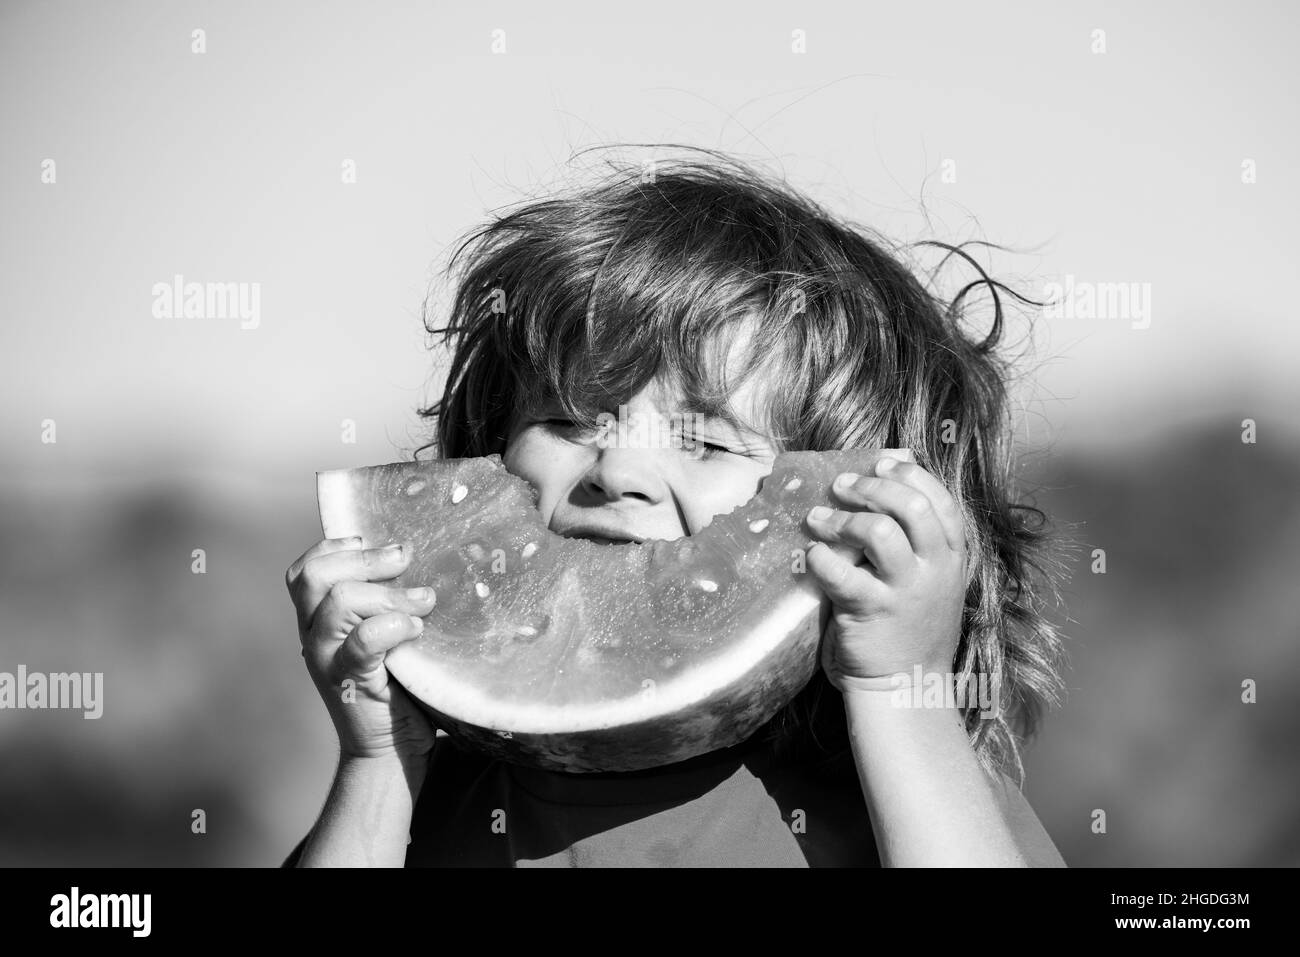 Les enfants souffrant de faim mangent de la pastèque rouge dans la bouche. Les enfants mangent du melon. Banque D'Images